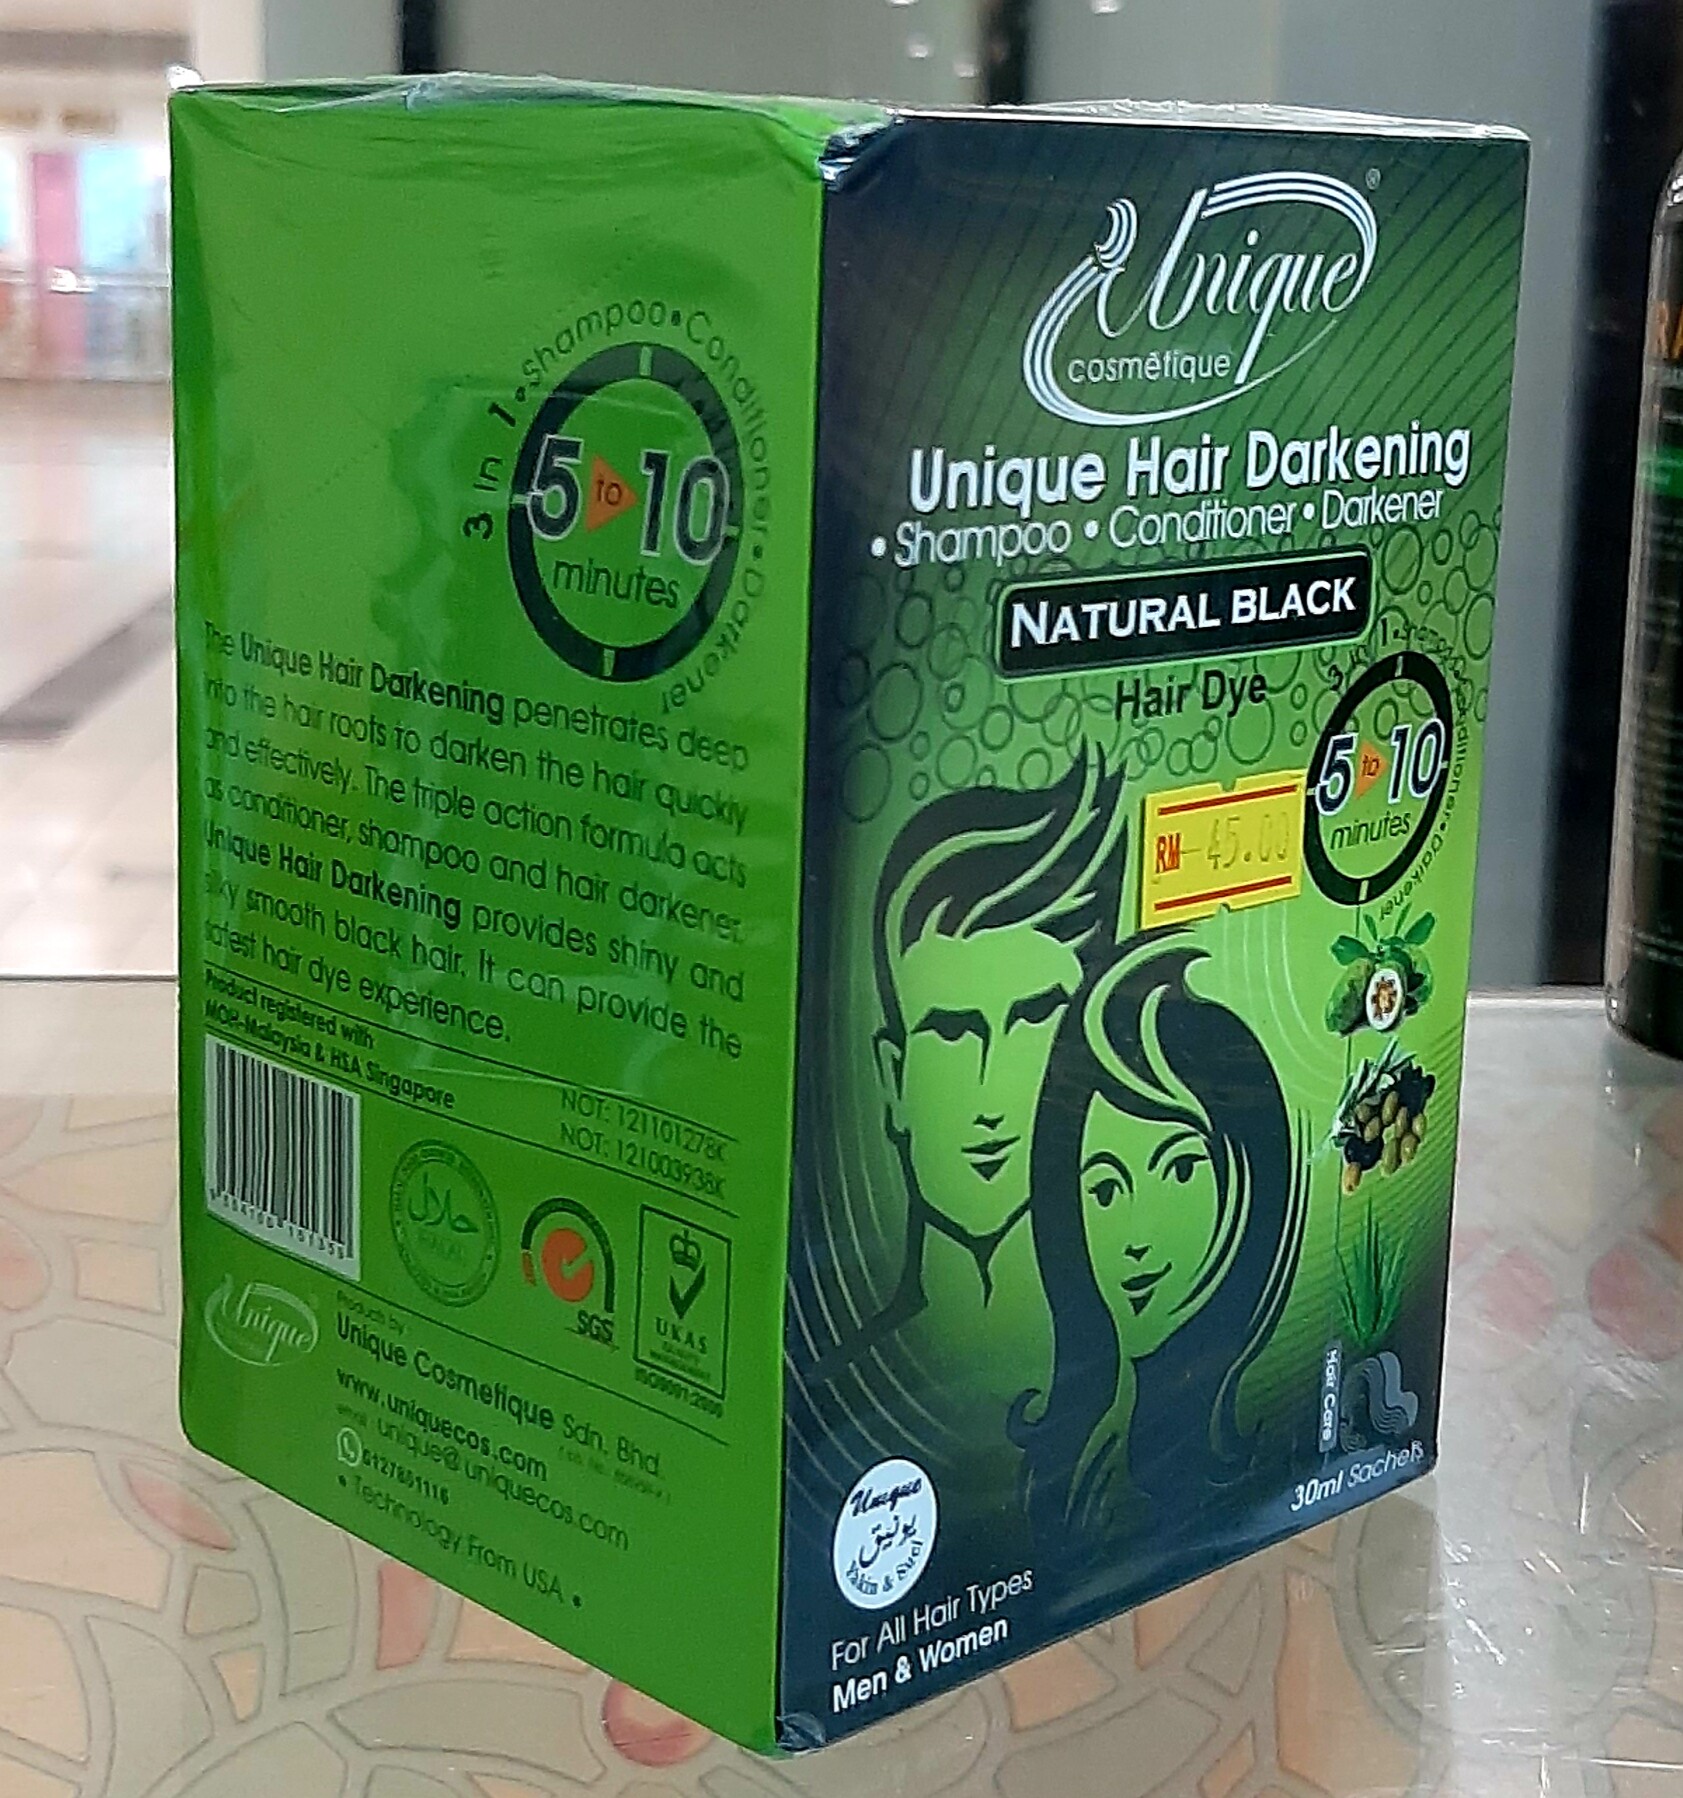 Unique Hair Darkening,Conditioner & Darkener Shampoo (Natural Black) 10  Sachets in a Box AT BEST PRICE ! | Lazada